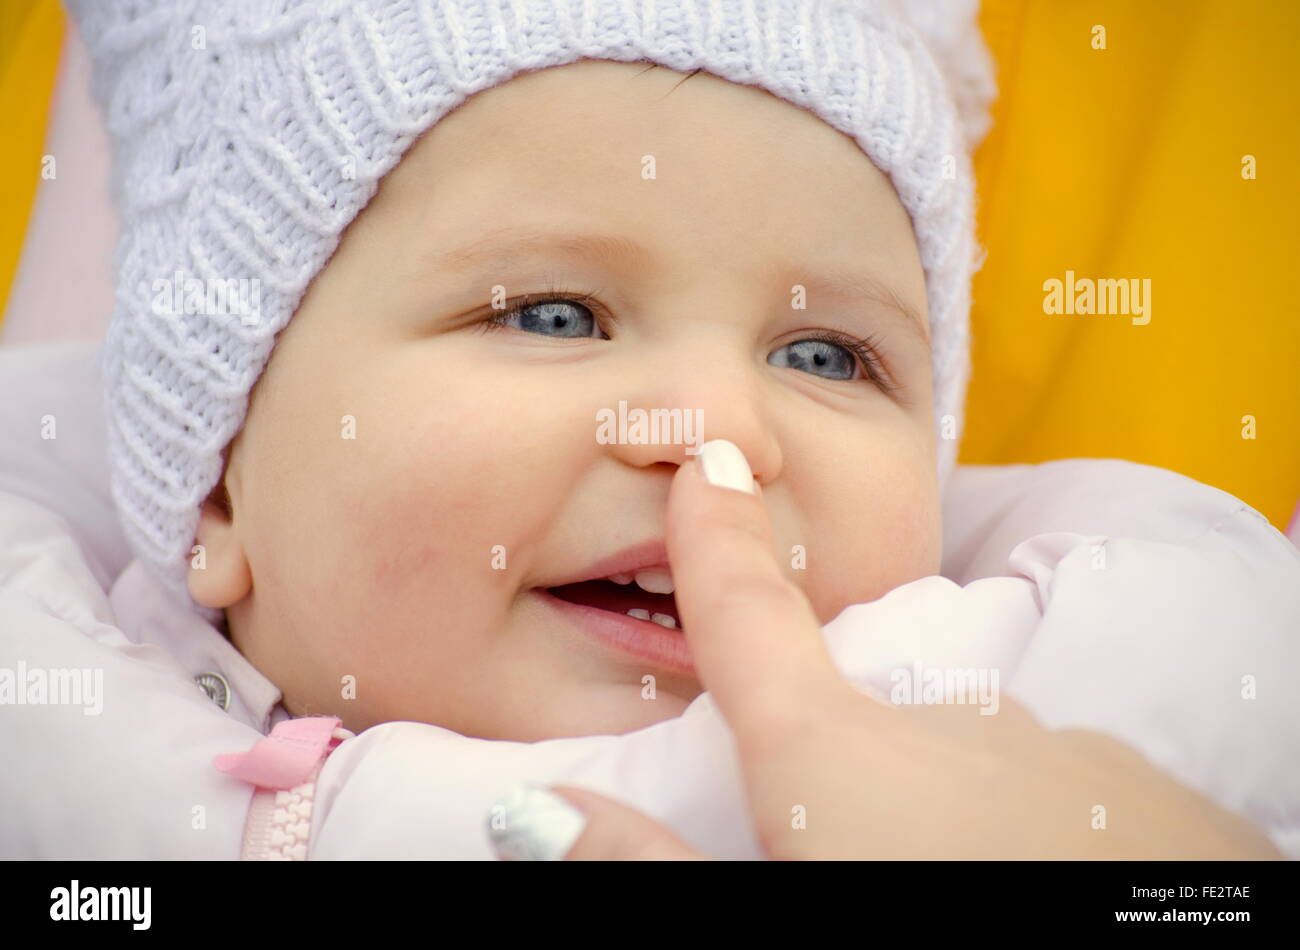 Toque la nariz del bebé sonriendo Foto de stock